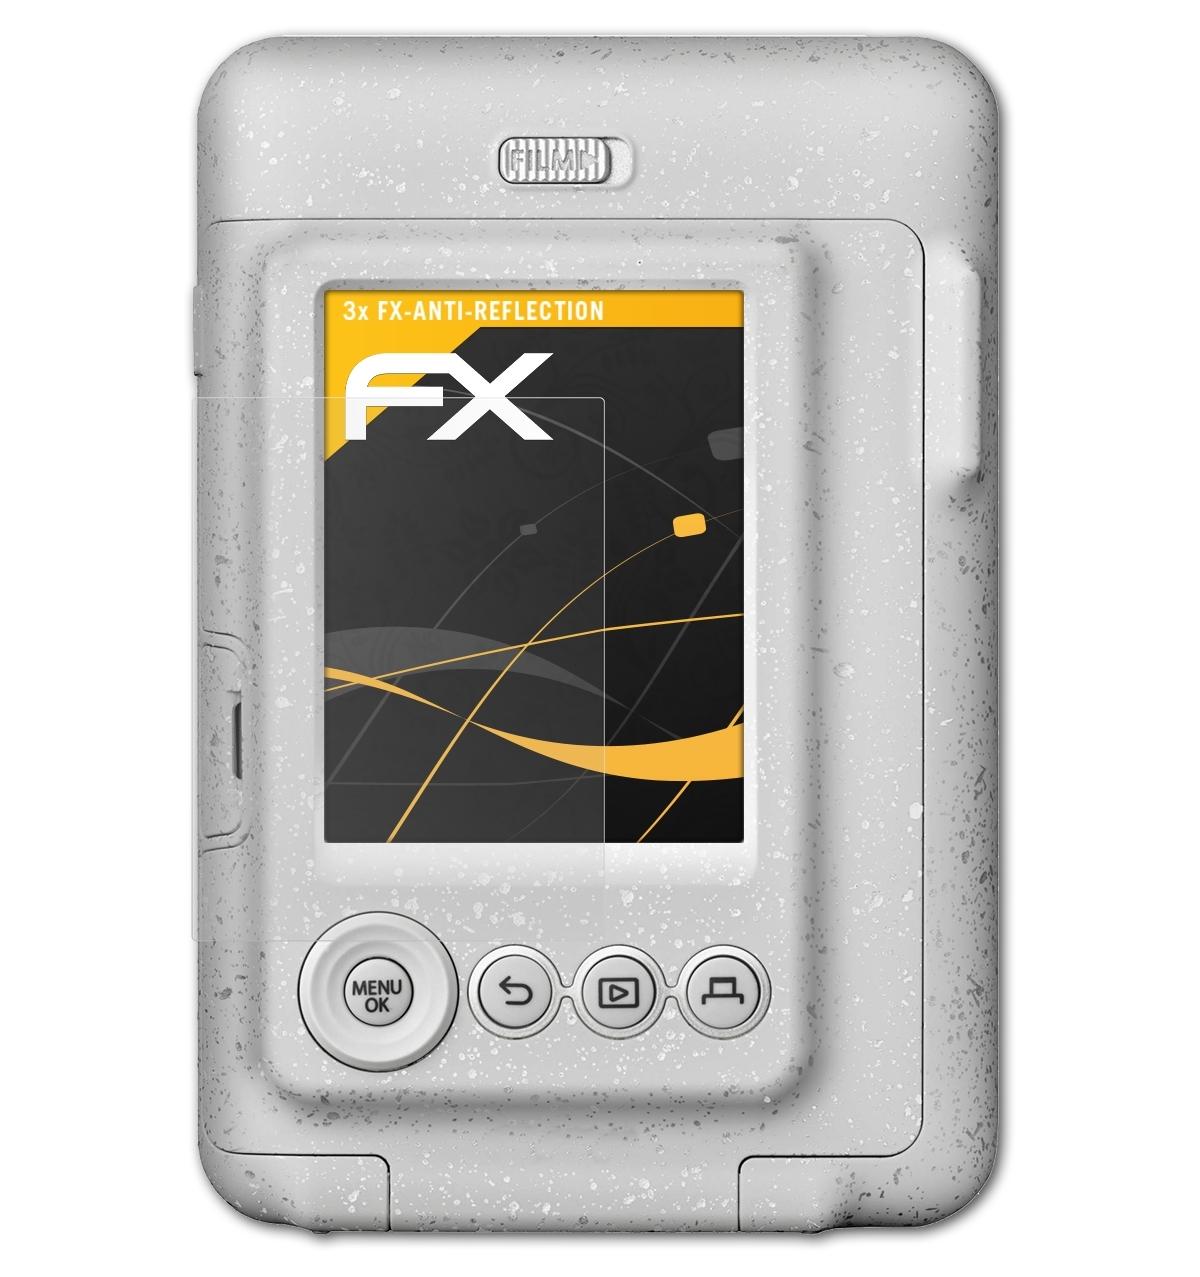 ATFOLIX 3x FX-Antireflex Displayschutz(für LiPlay) mini Instax